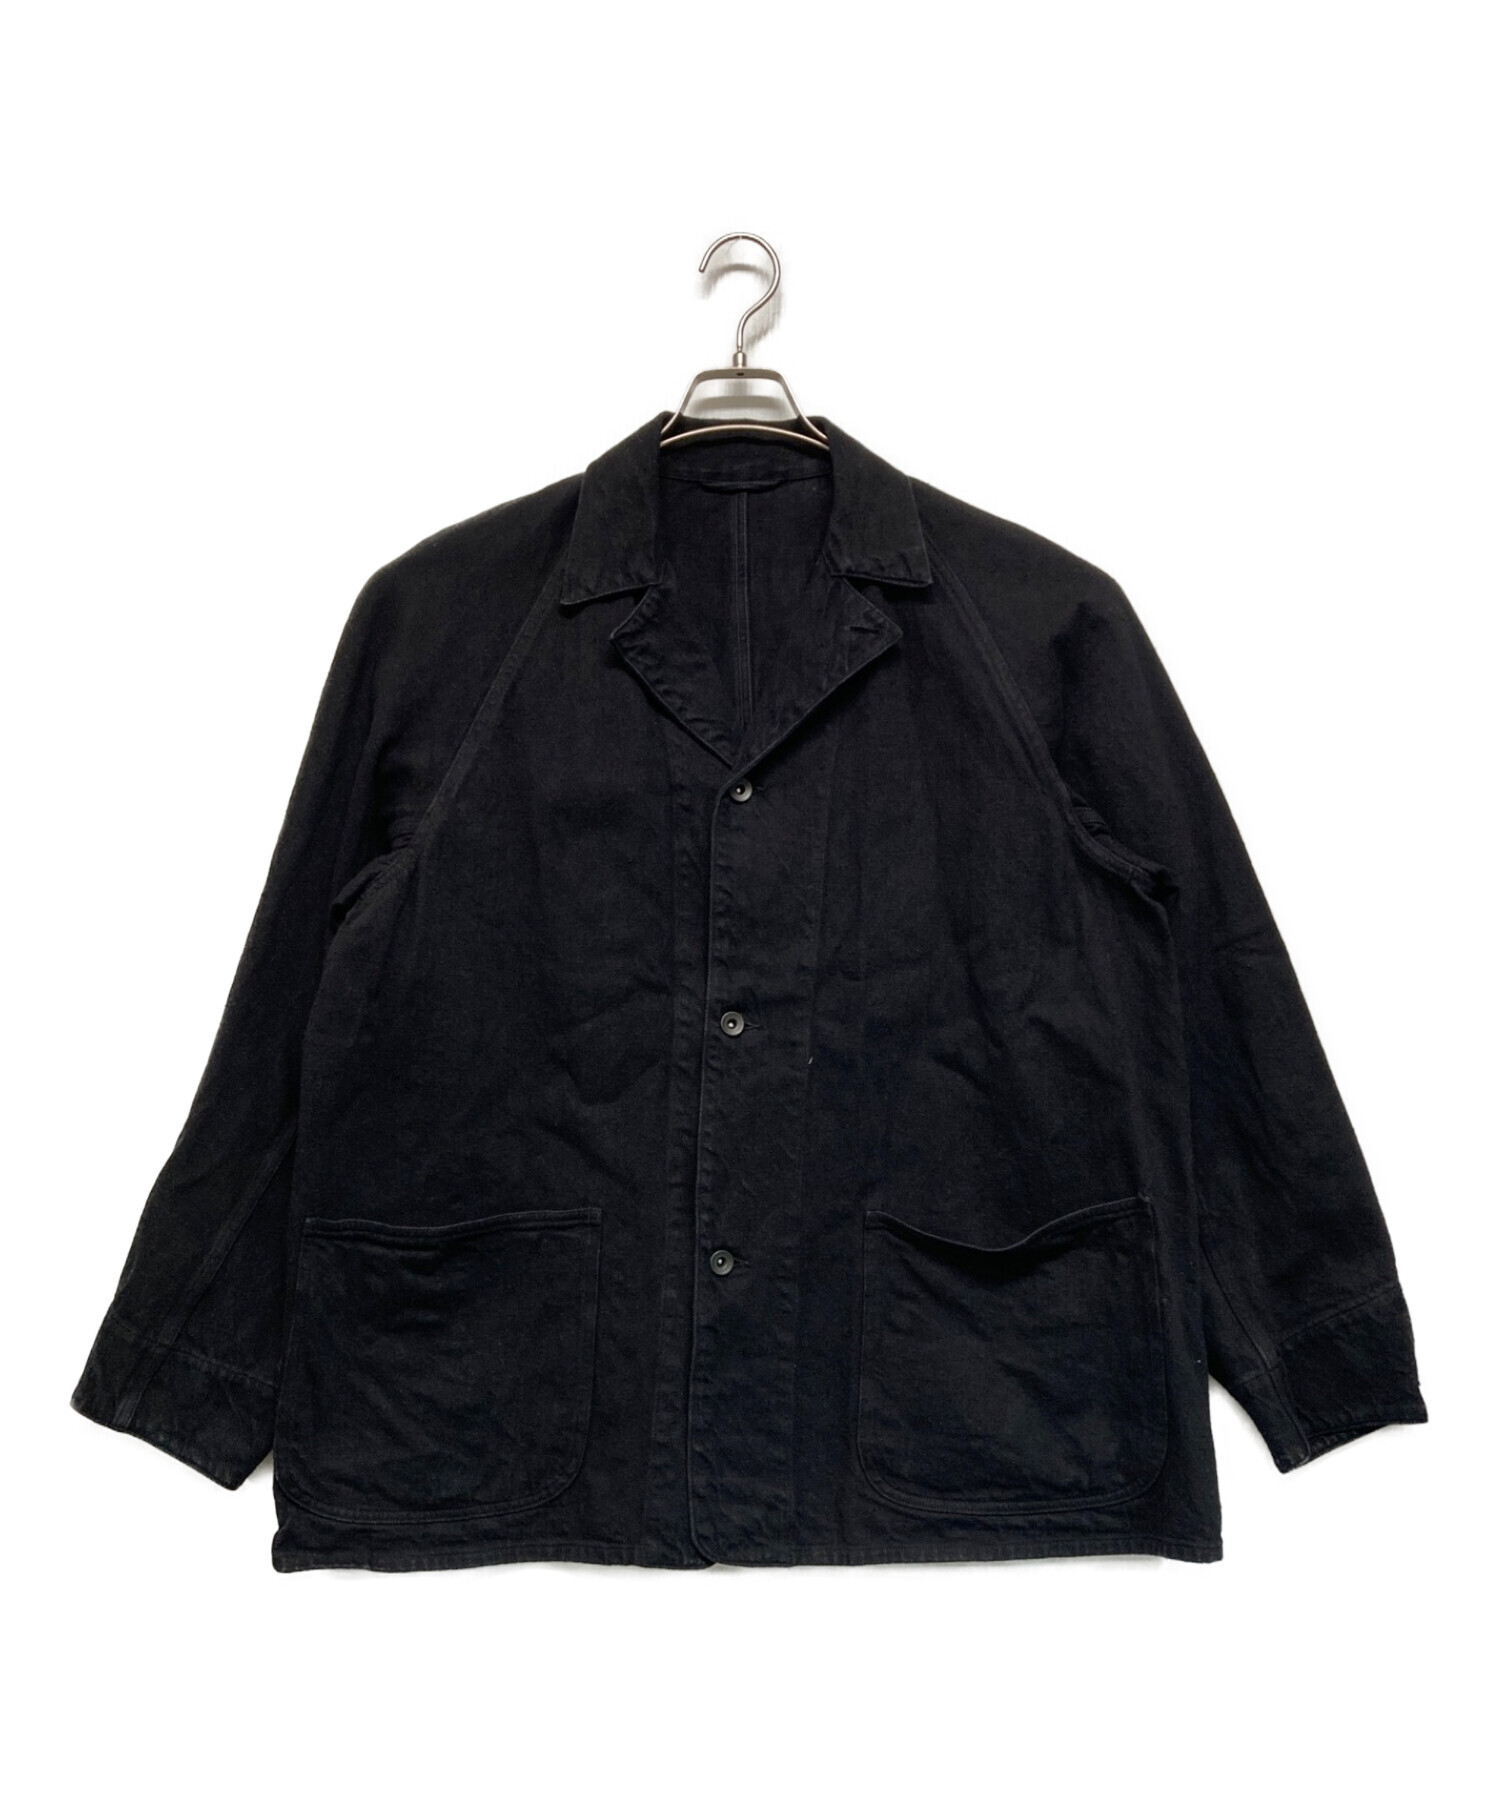 魅力的な価格 美品 comoli デニムワークジャケット ブラック サイズ2 